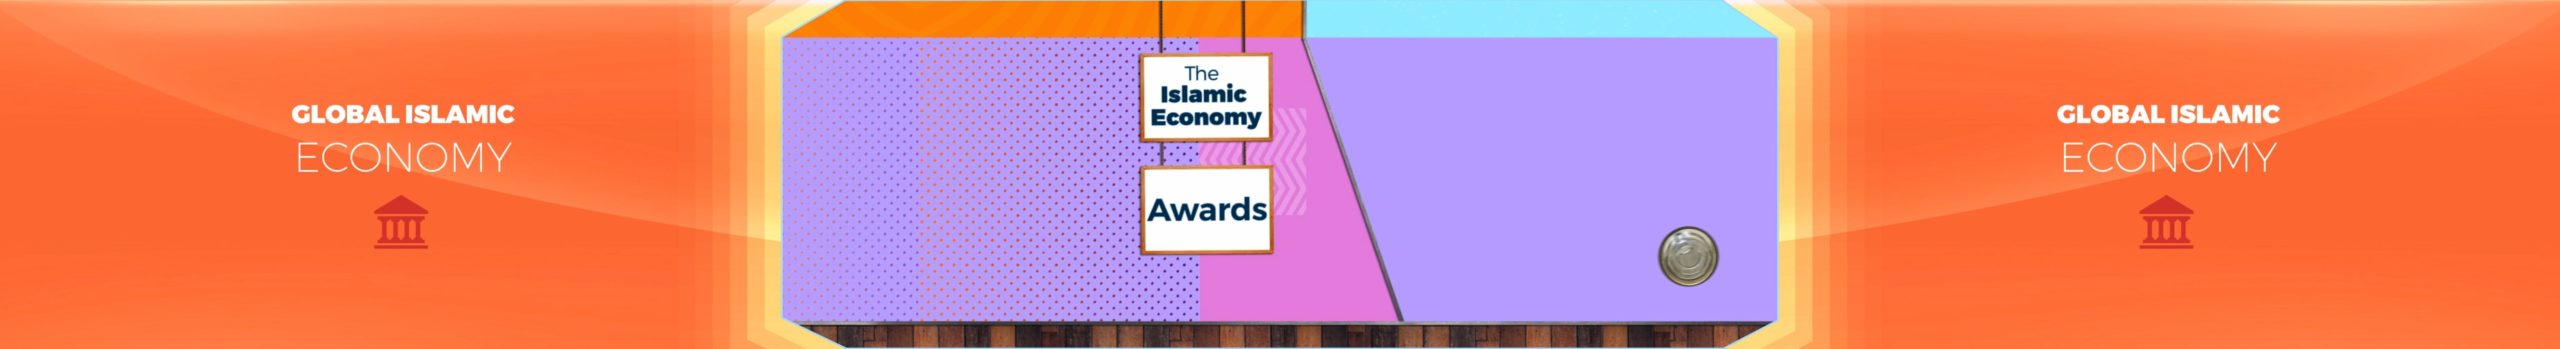 islamic-economy-awards-santasombra-victor-ruano-002